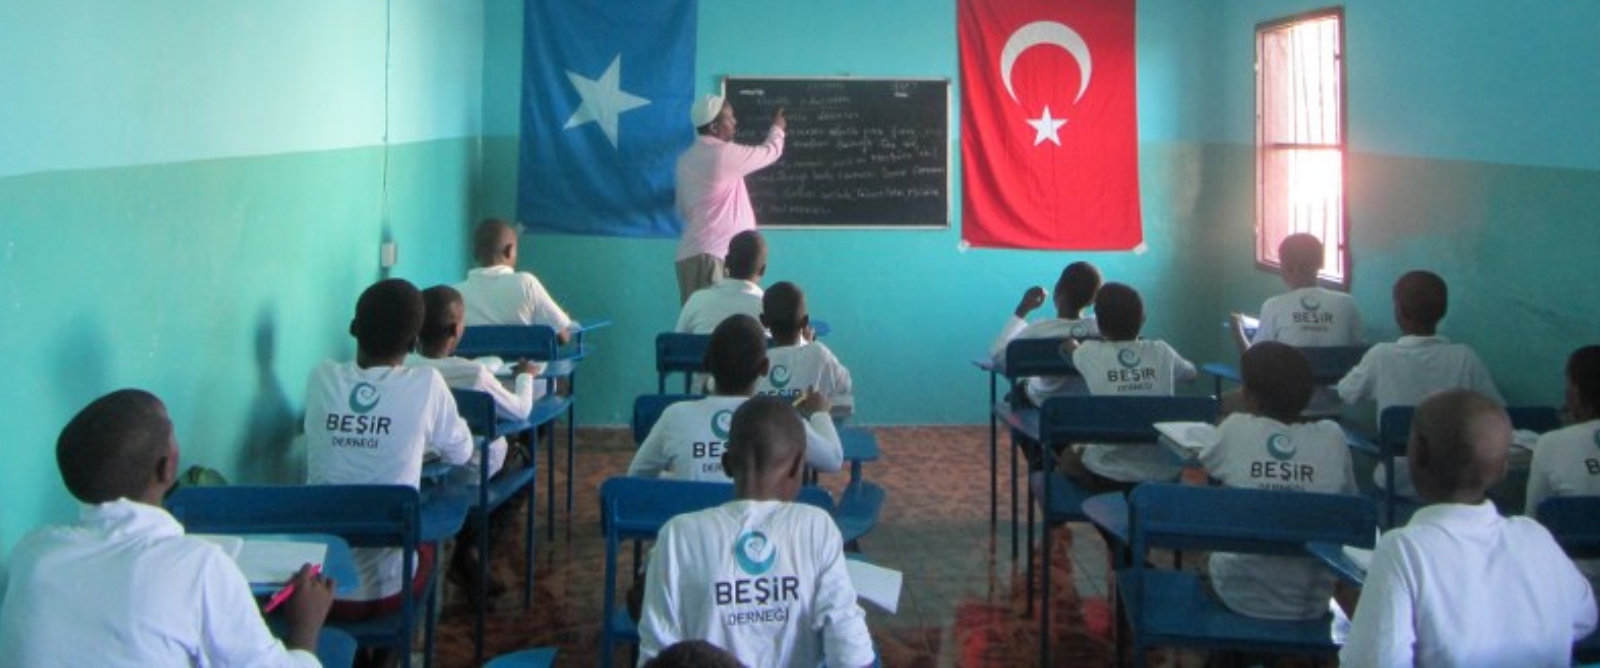 Biltek Okulları İdlib’teki Kardeşlerinin Yanında! 